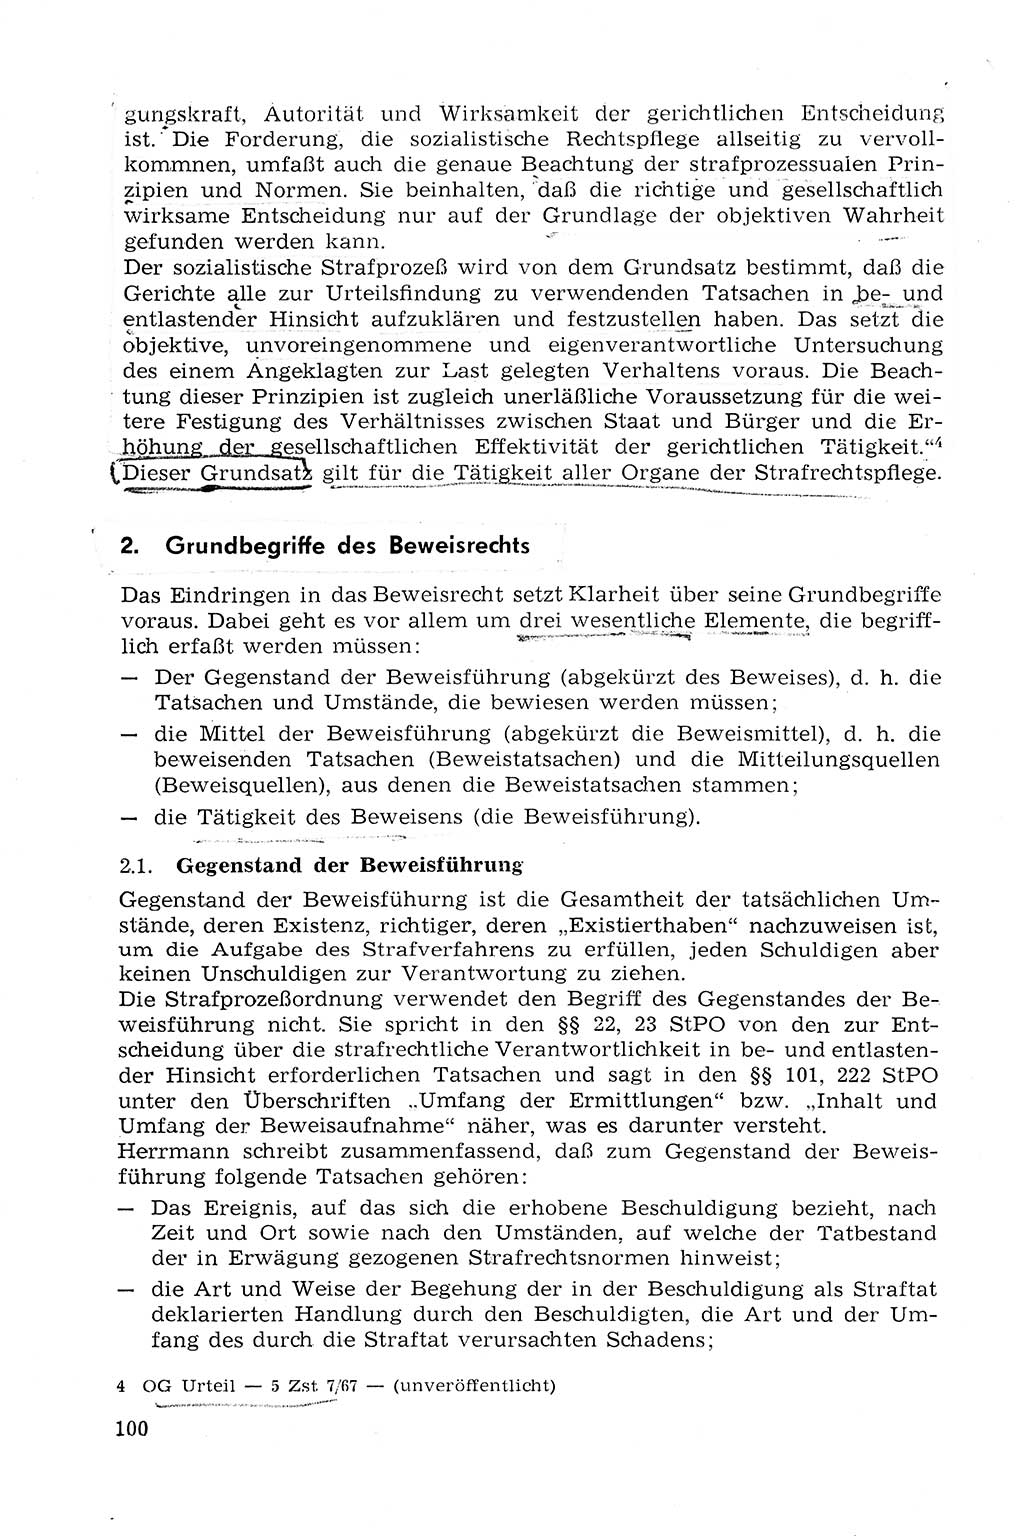 Strafprozeßrecht der DDR (Deutsche Demokratische Republik), Lehrmaterial 1969, Seite 100 (Strafprozeßr. DDR Lehrmat. 1969, S. 100)